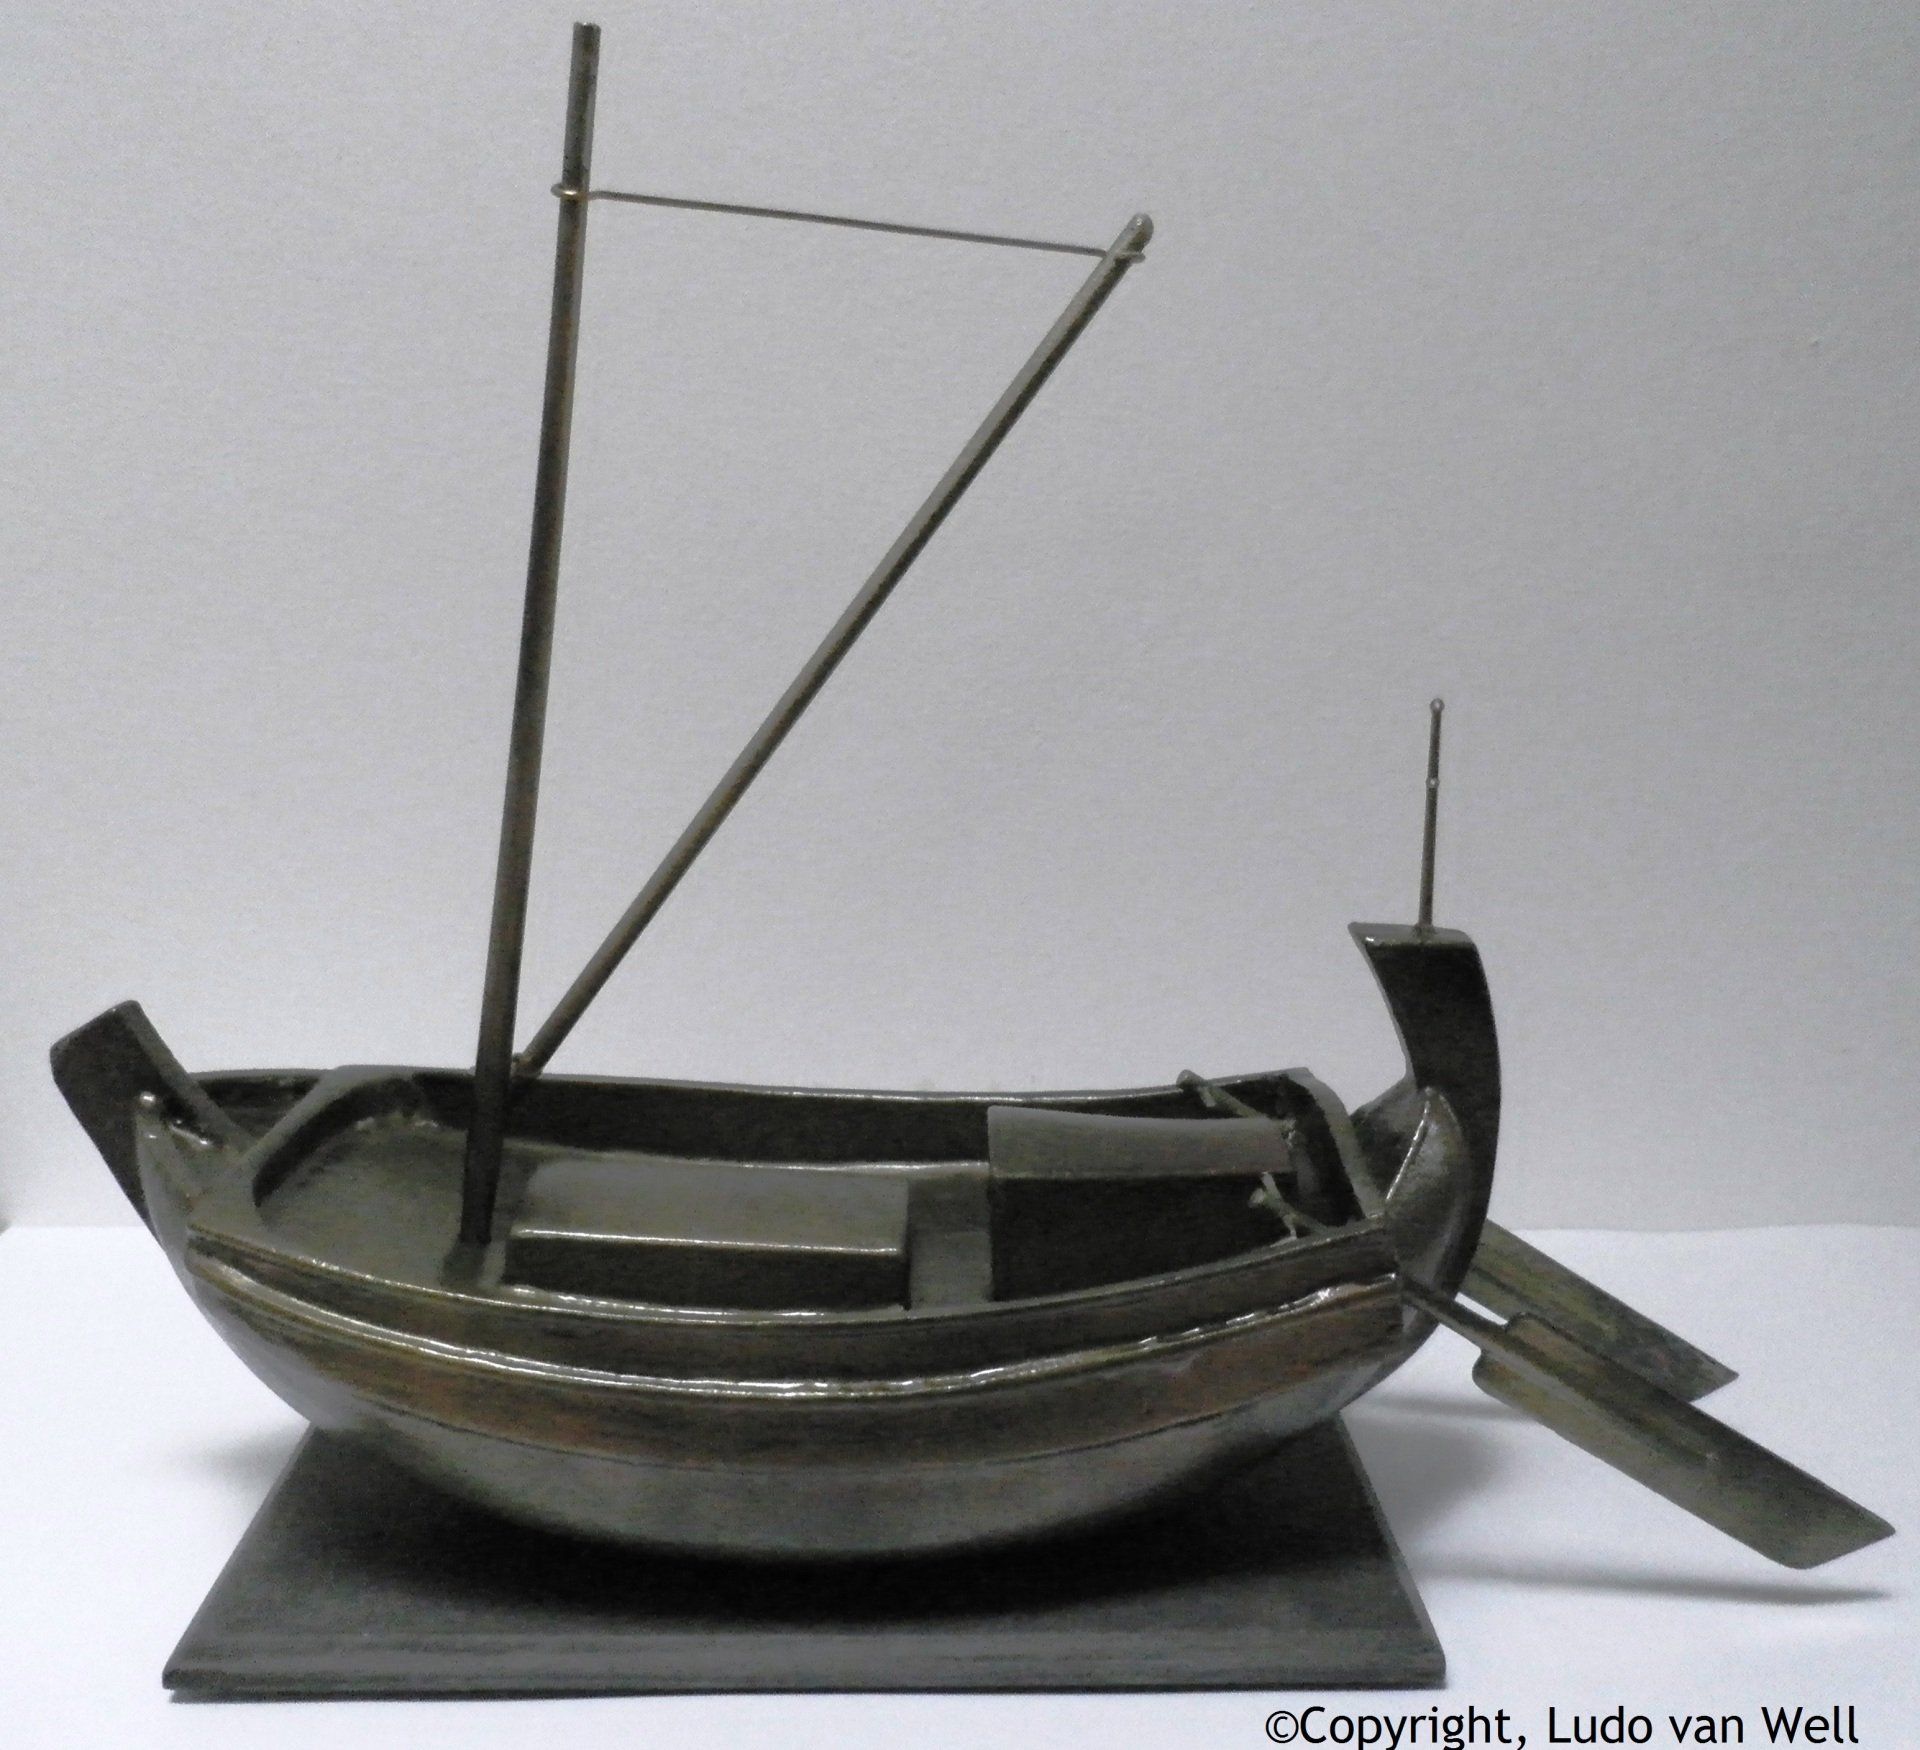 Caudicaria romeins vrachtvaartuig van de Rijn, 2e en 3e eeuw voor Christus Ludo van Well